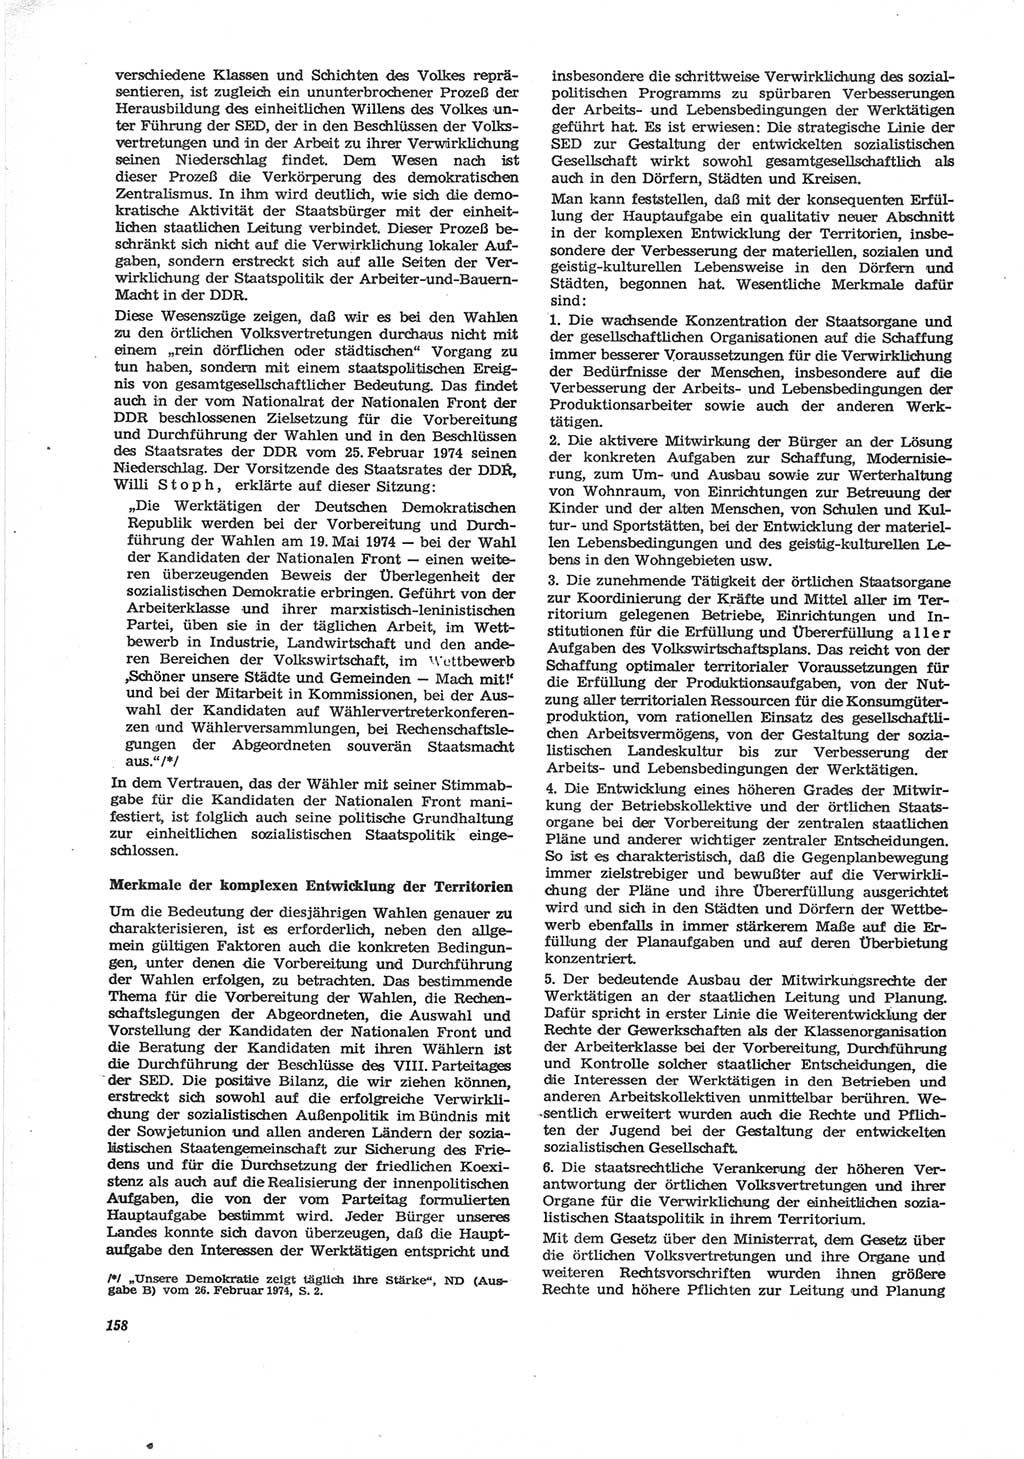 Neue Justiz (NJ), Zeitschrift für Recht und Rechtswissenschaft [Deutsche Demokratische Republik (DDR)], 28. Jahrgang 1974, Seite 158 (NJ DDR 1974, S. 158)